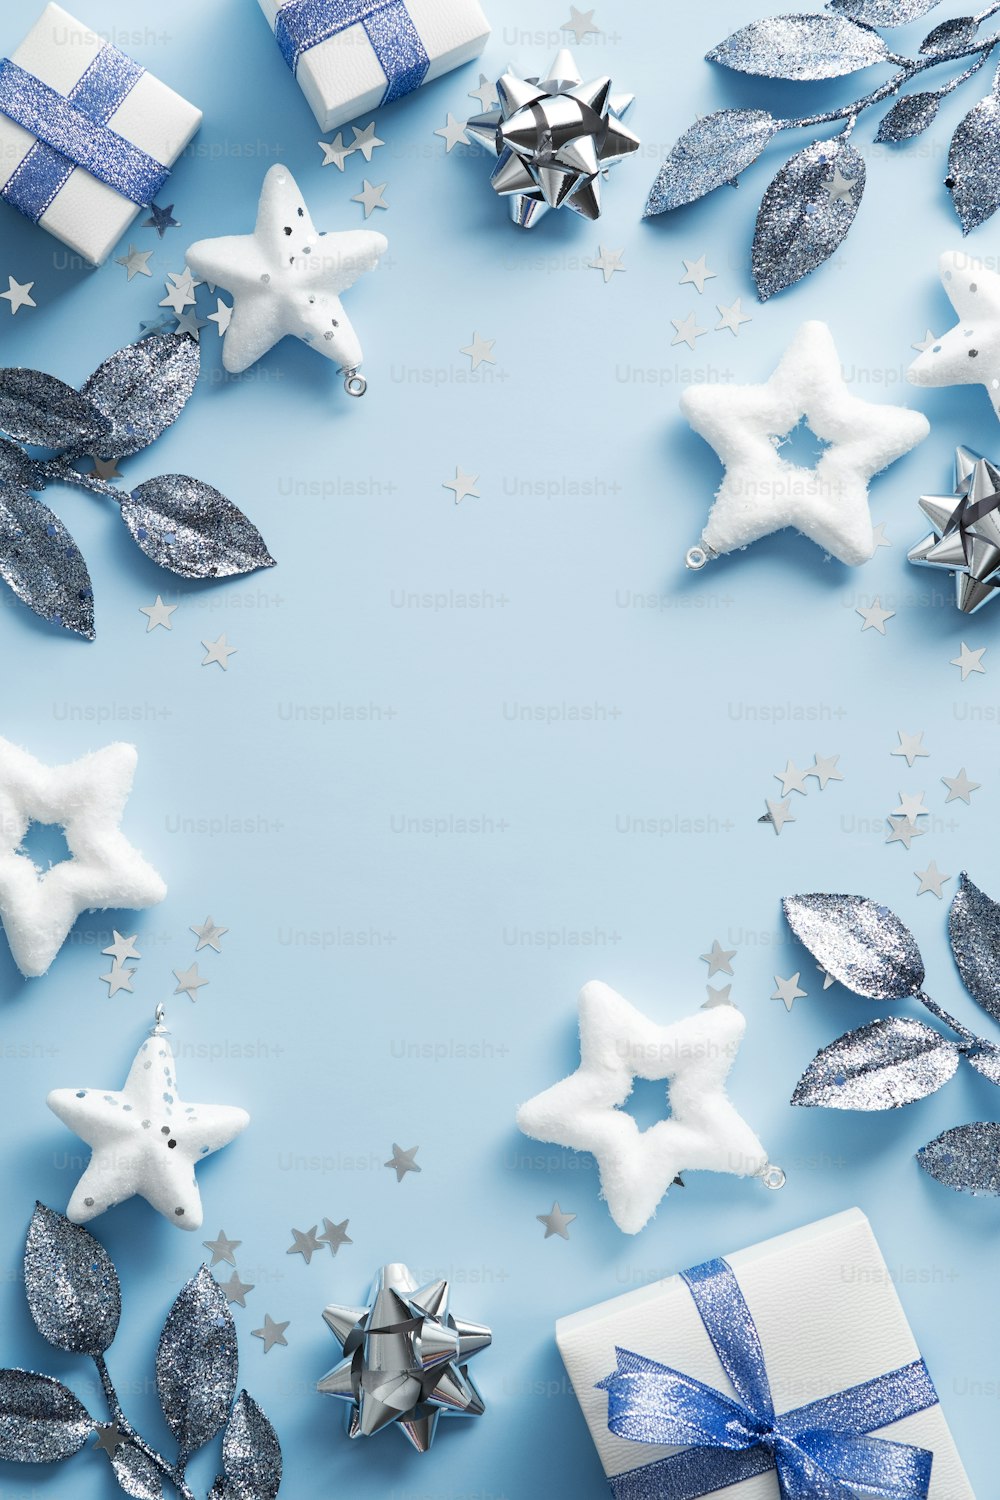 Sfondo felice giorno di Natale. Eleganti decorazioni natalizie, stelle, rami su tavola blu. Design del banner verticale di Capodanno, mockup del poster di Natale. Posa piatta, vista dall'alto.